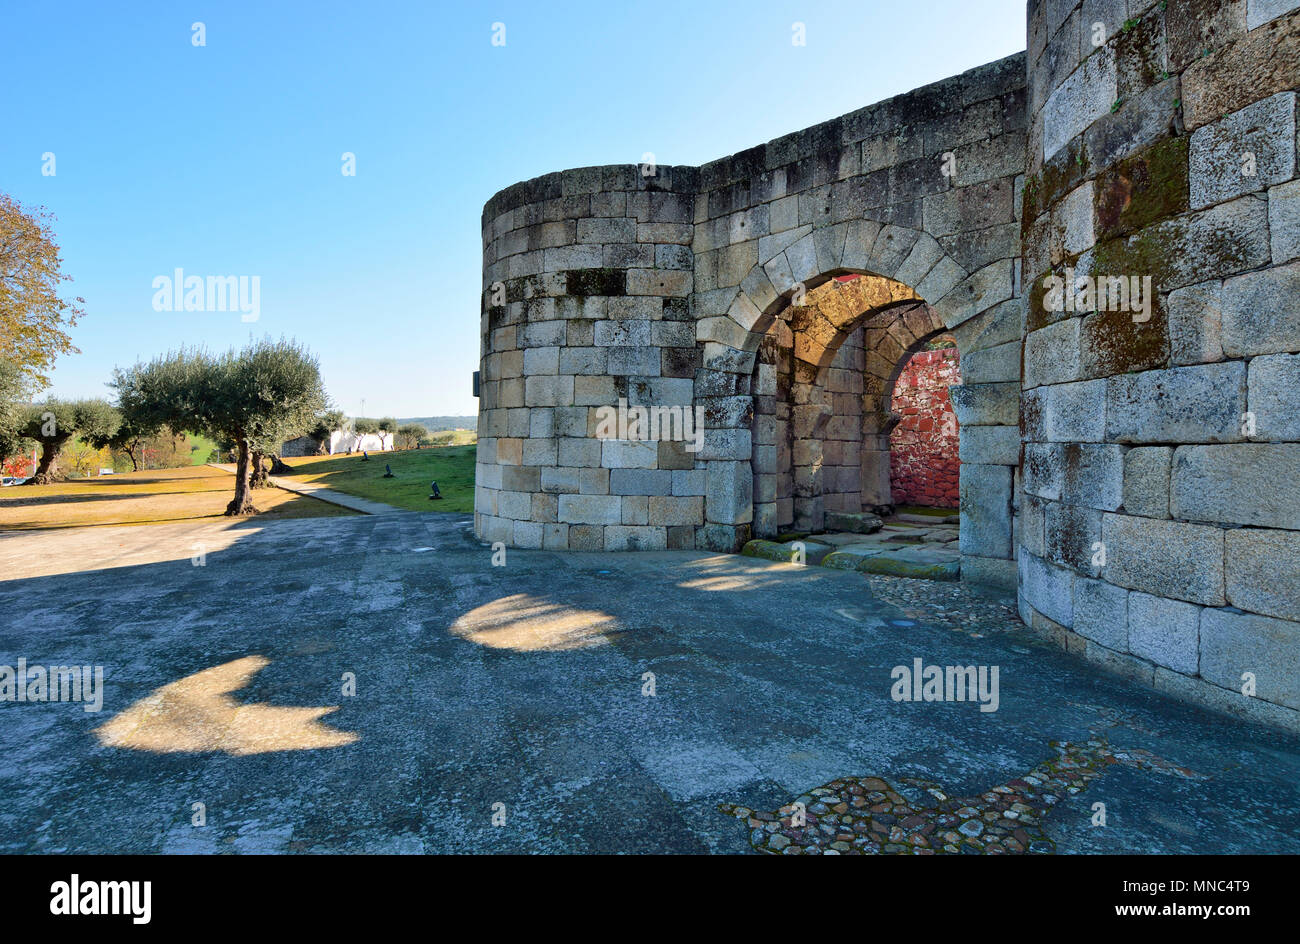 L'enceinte romaine du village historique d'Idanha a Velha. Portugal Banque D'Images